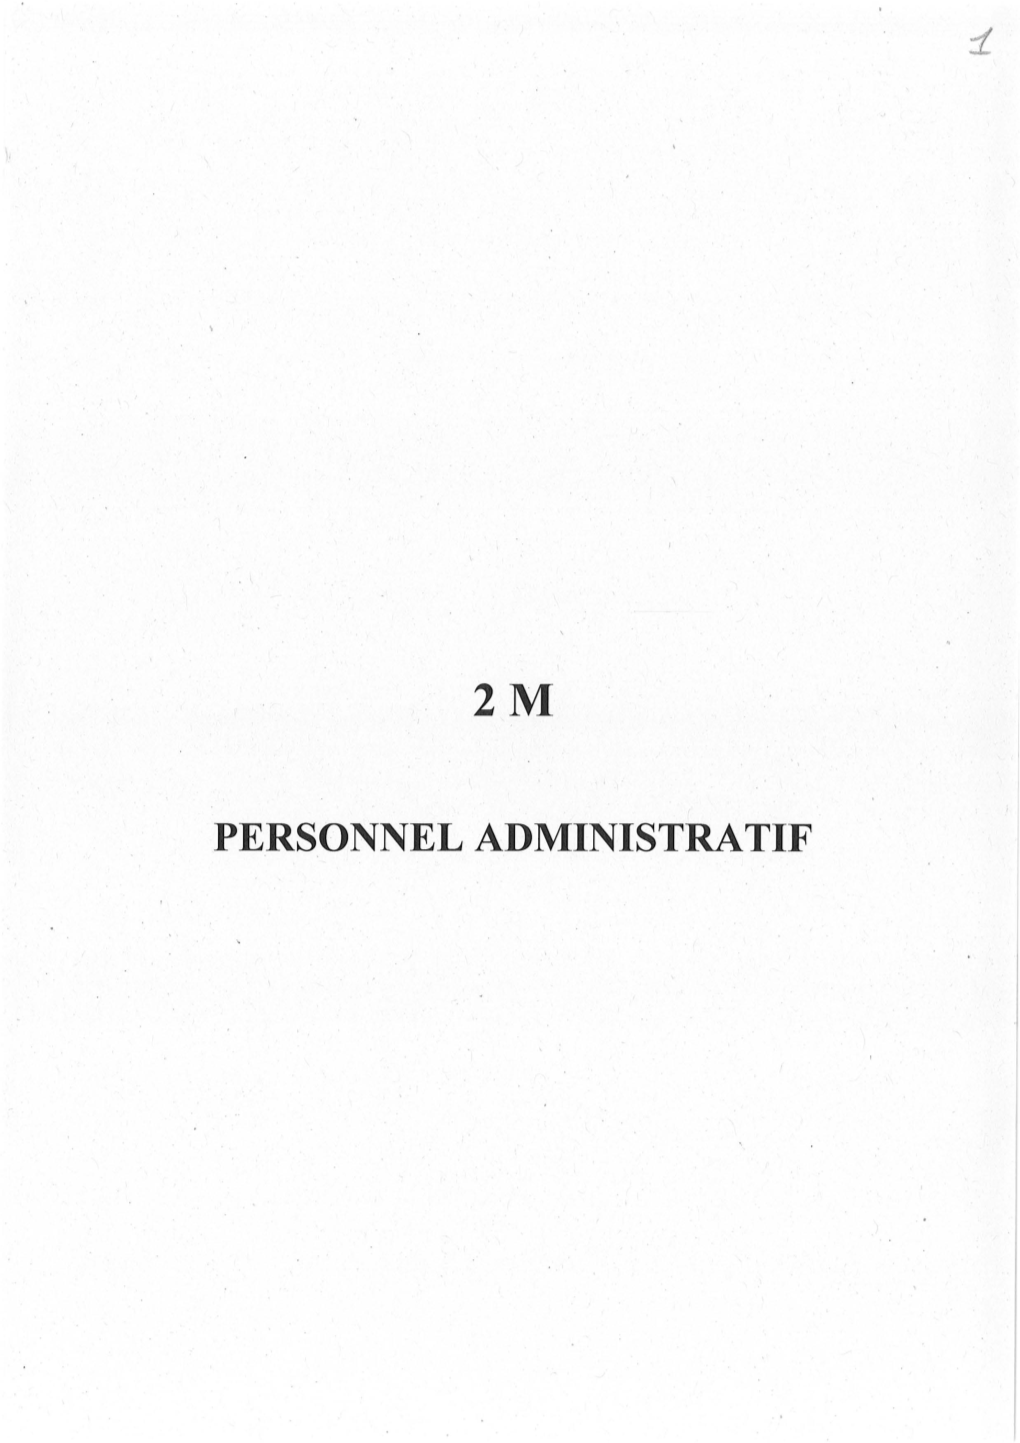 PERSONNEL ADMINISTRATIF I N T R O D U C T I O N À La Sous- Série 2 M: Personnel Administratif (An VIII 1940)